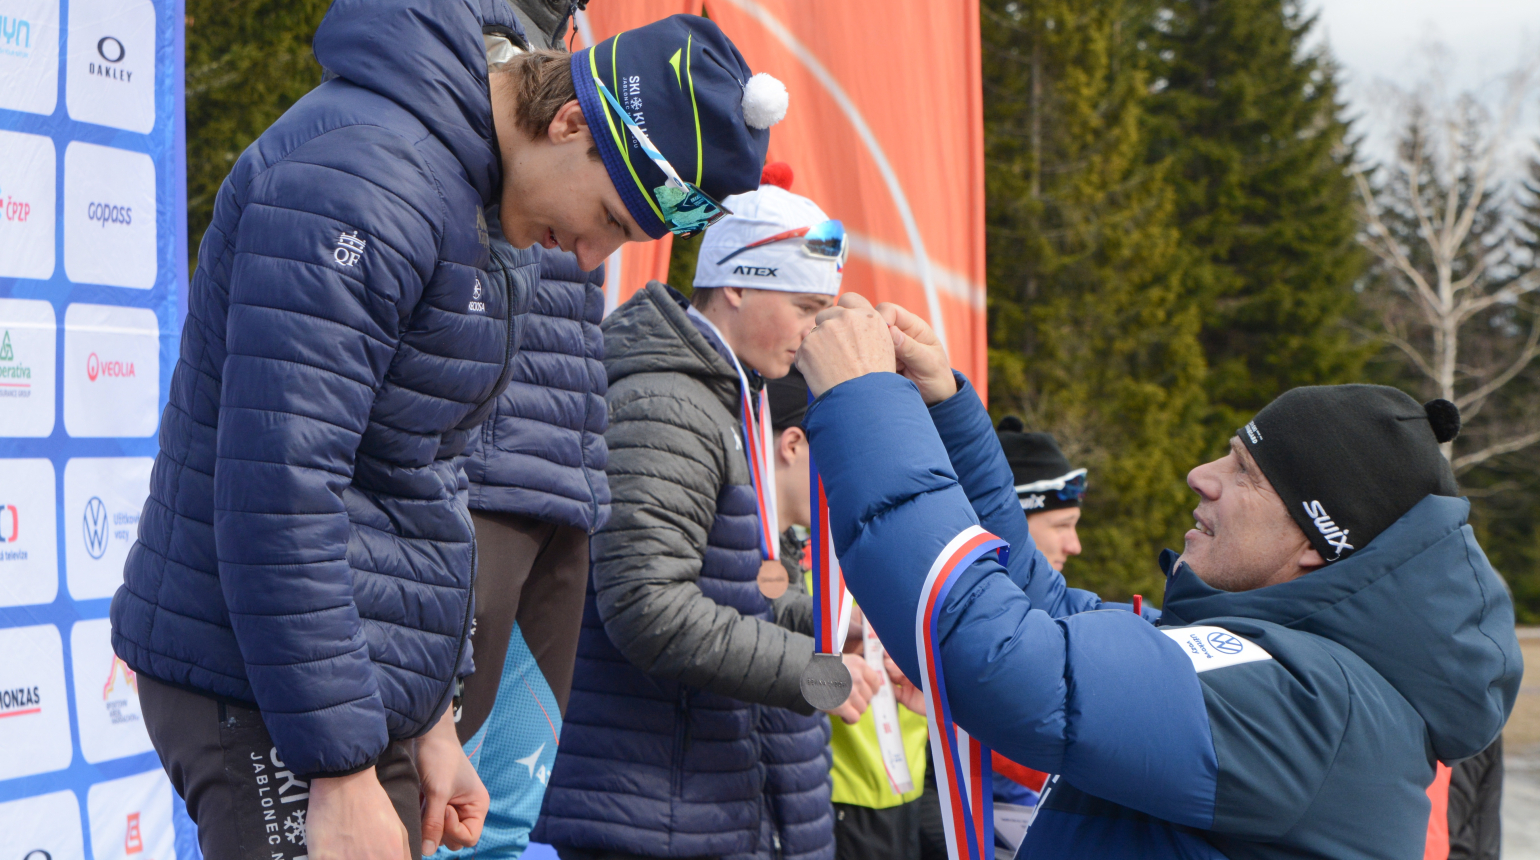 Skvělá i komplikovaná sezona, hodnotí předseda běžců na lyžích Aleš Vaněk